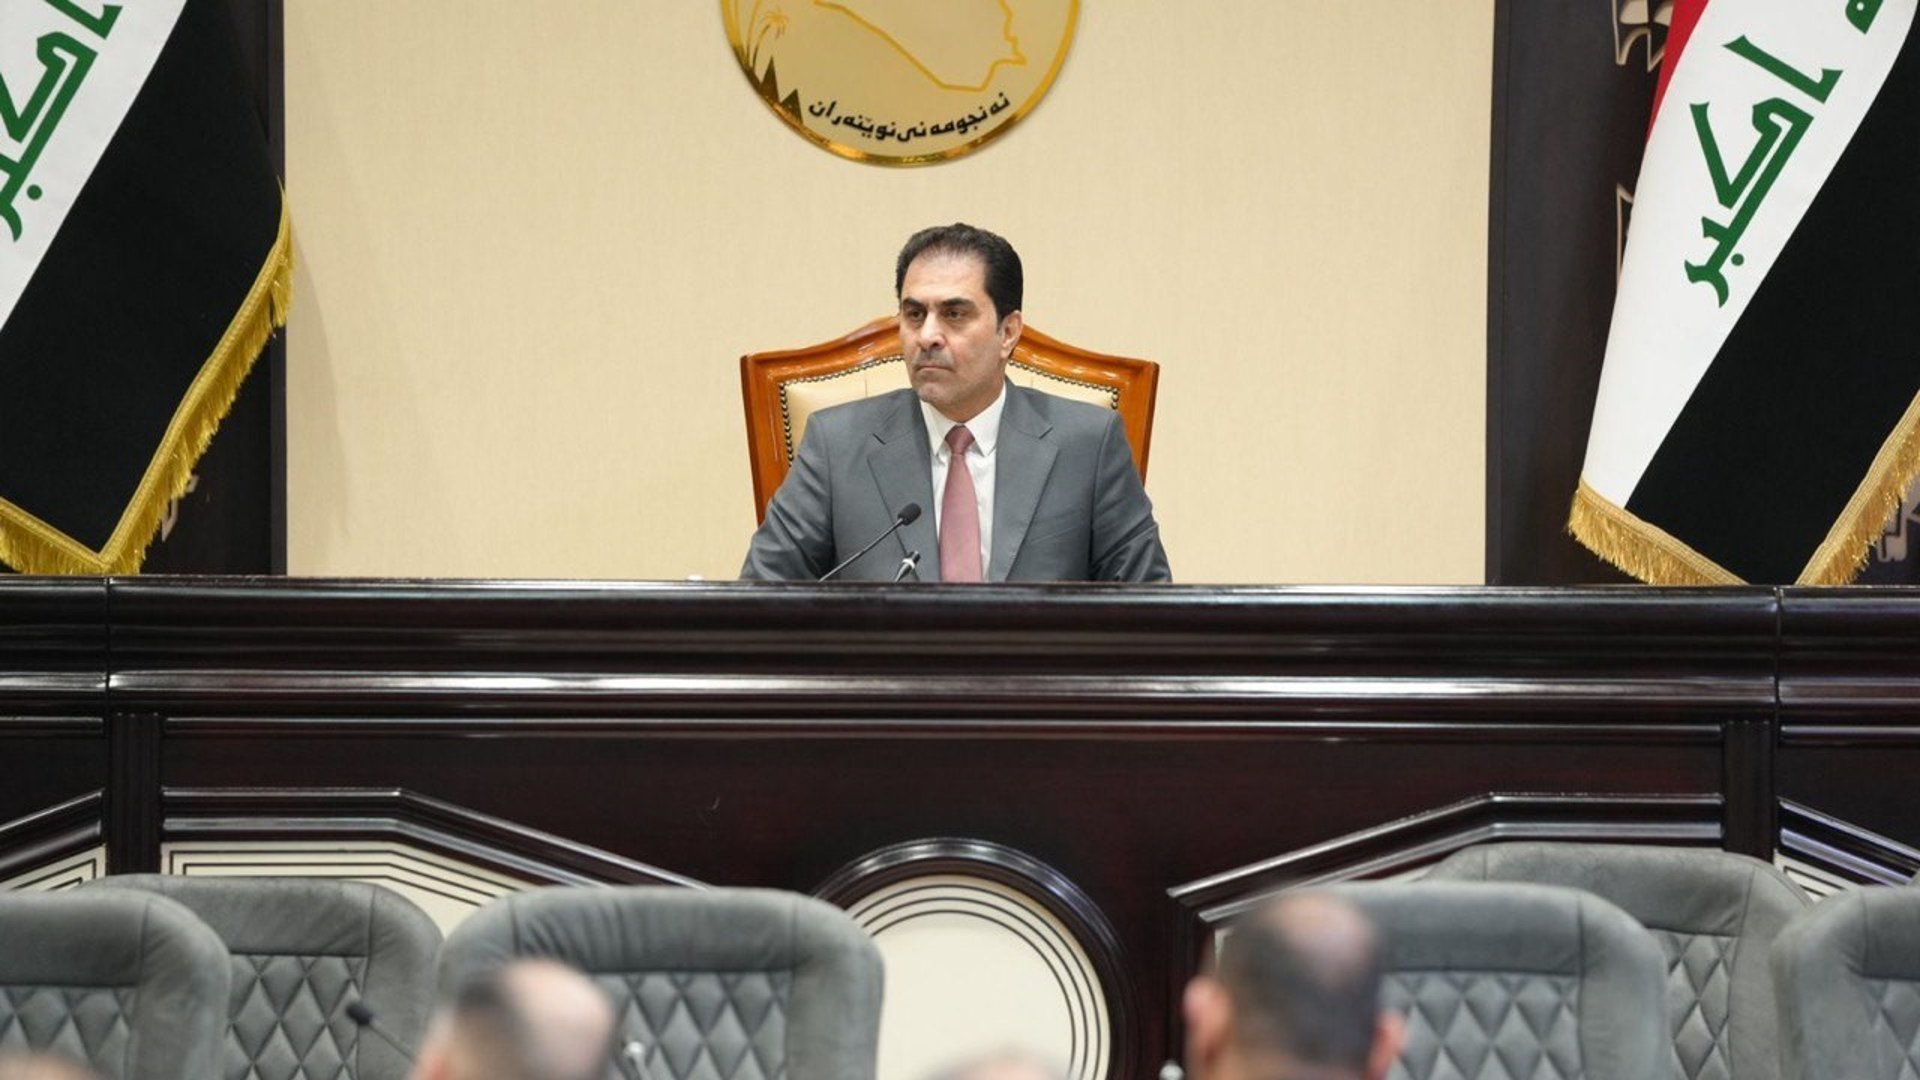 لجنة برلمانية لبحث أسباب تعيين أجانب أكثر من العراقيين في شركات النفط